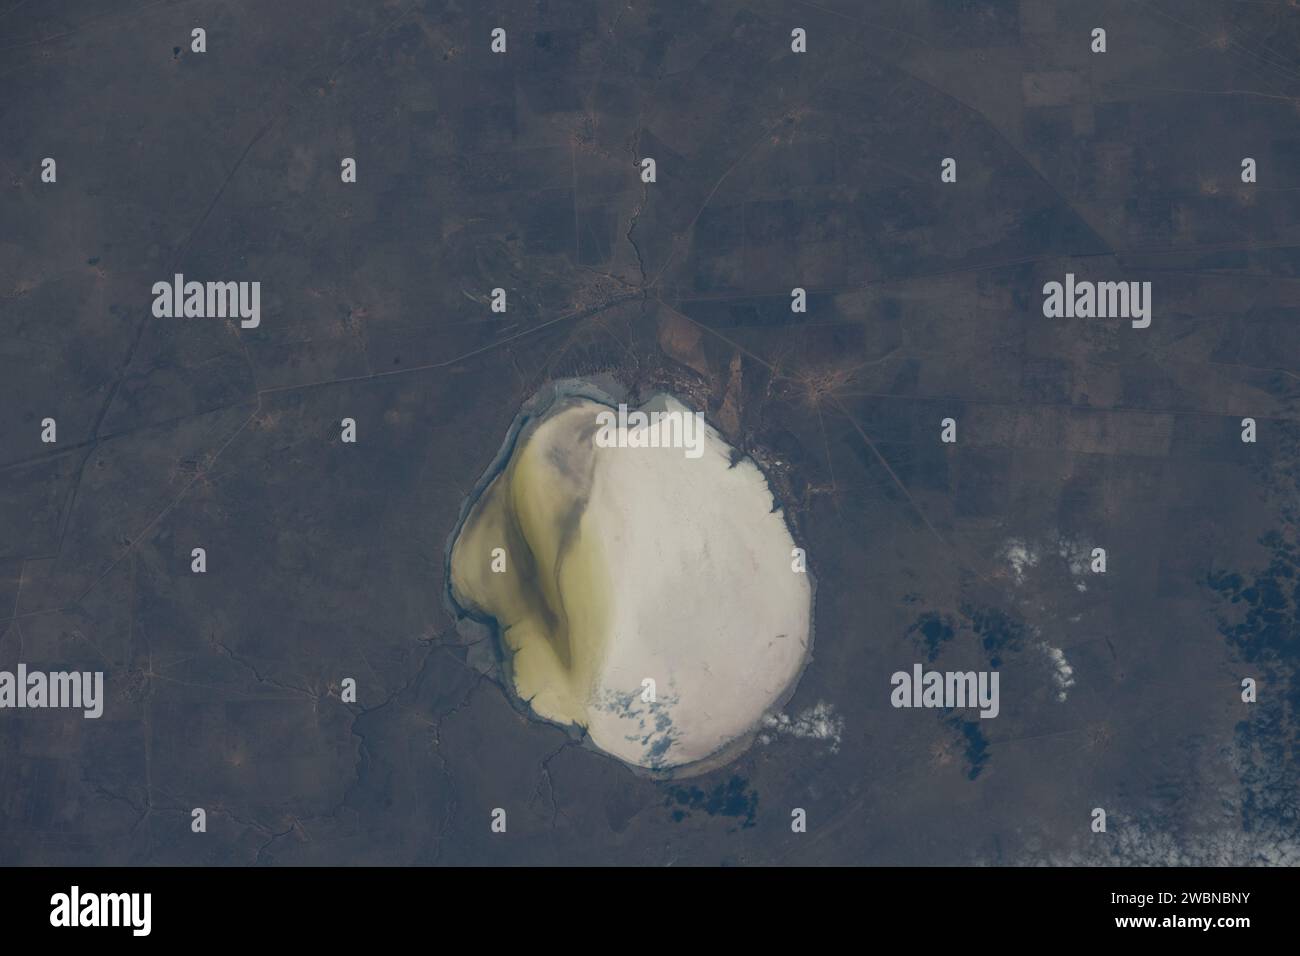 Iss070e005945 (19. Oktober 2023) --- der Elton-See, ein Salzsee in Russland nahe der westlichen Grenze Kasachstans, ist von der Internationalen Raumstation aus in einer Umlaufbahn von 260 Meilen dargestellt. Stockfoto